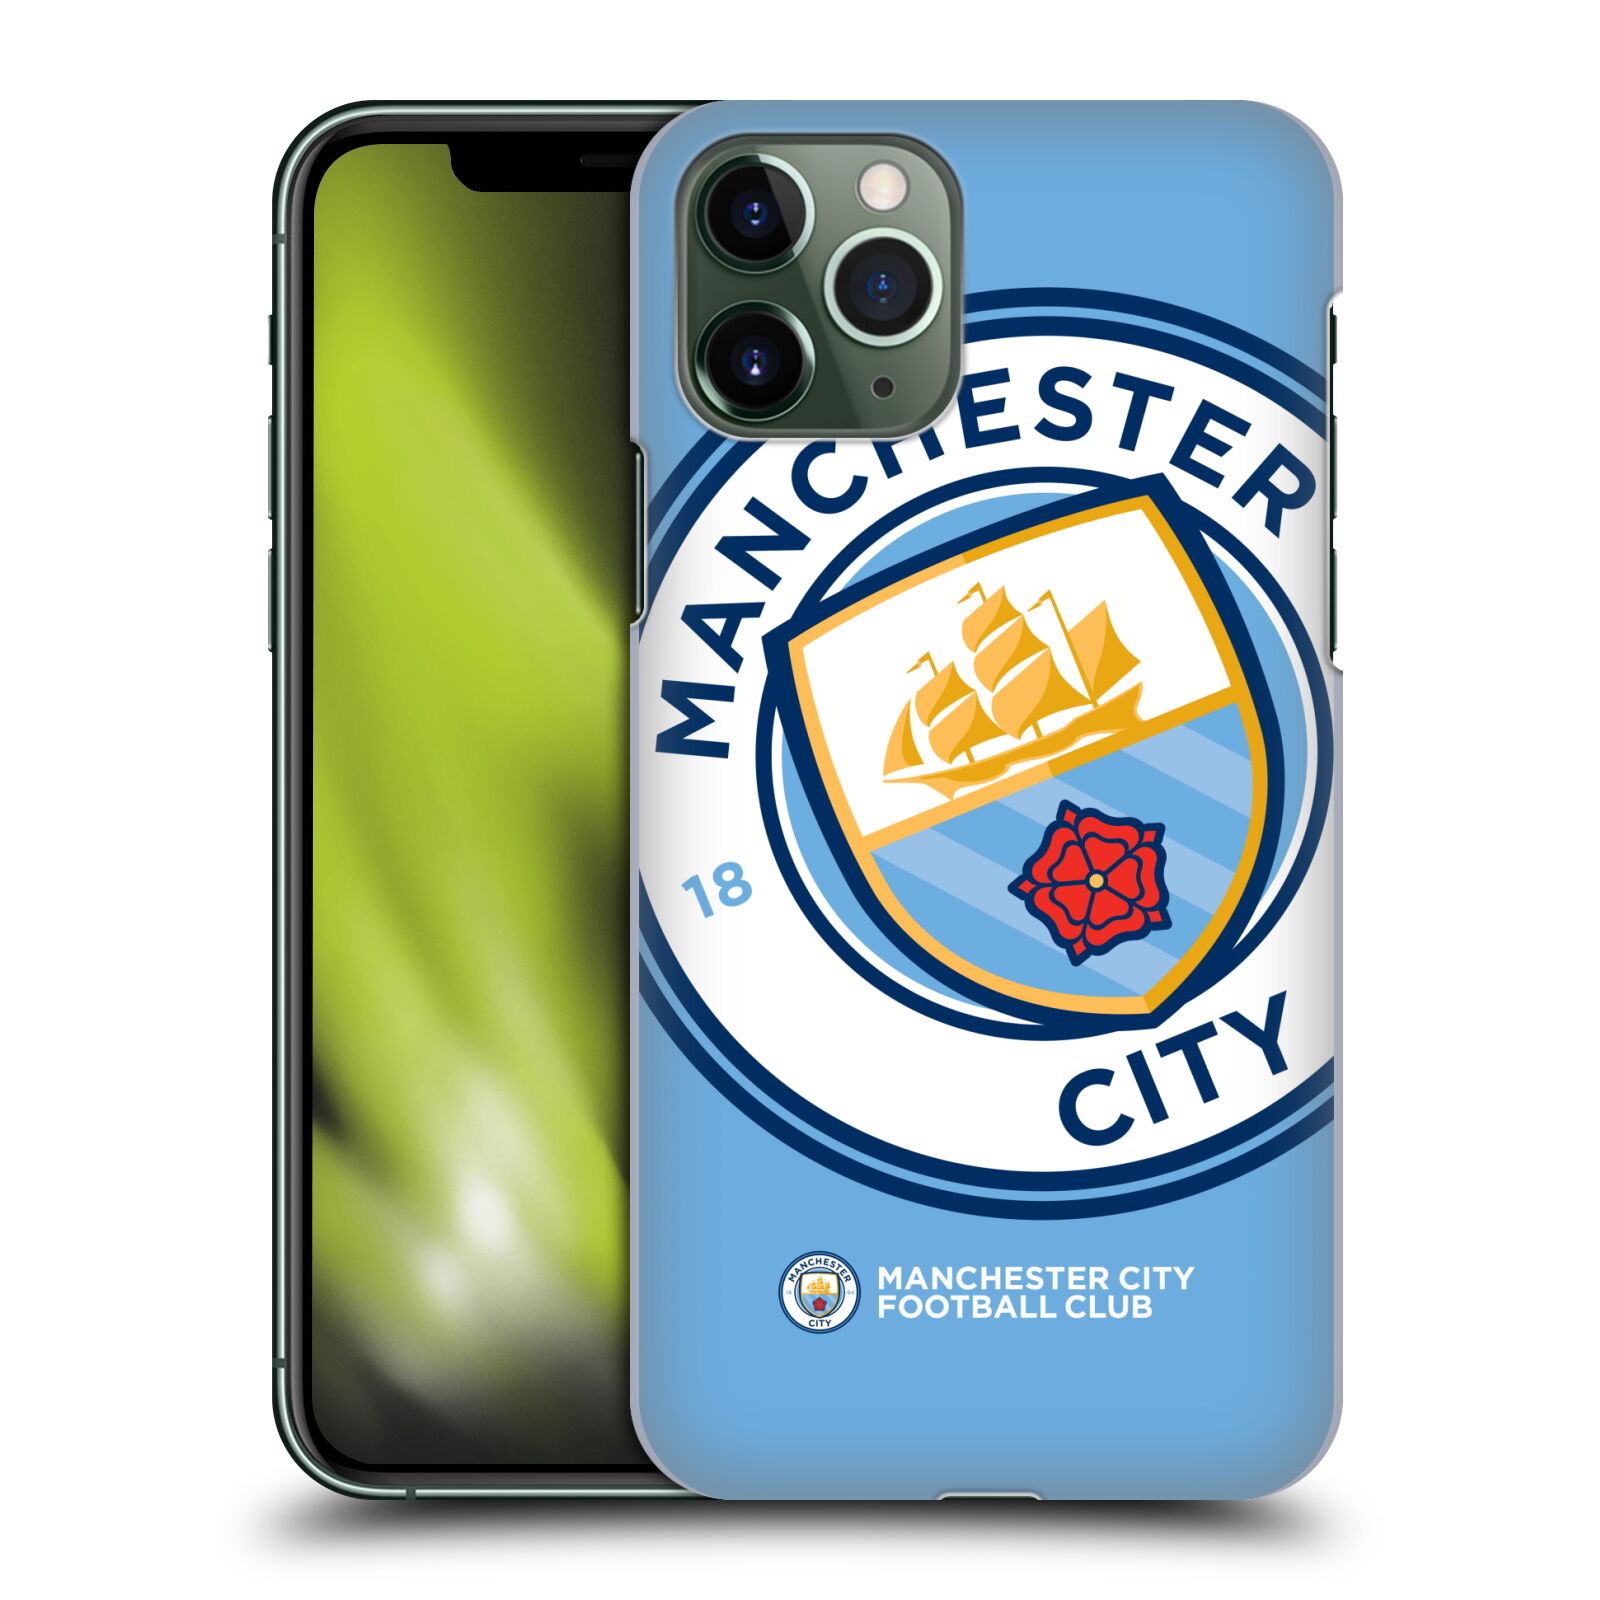 Pouzdro na mobil Apple Iphone 11 PRO - HEAD CASE - Fotbalový klub Manchester City modrý velký přesahující znak